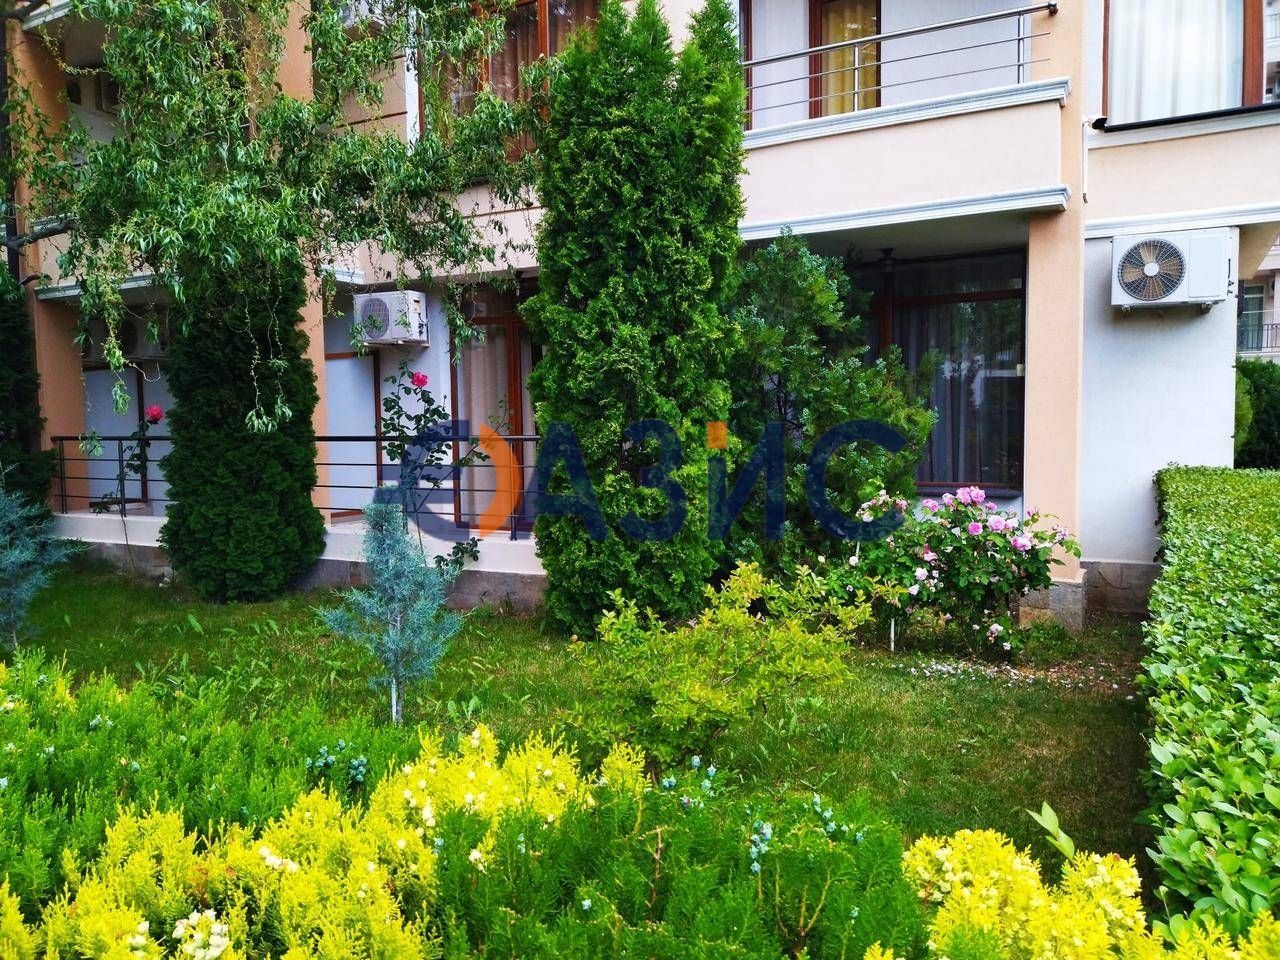 Апартамент с 1 спалня в комплекс Света Елена в Слънчев Бряг, България